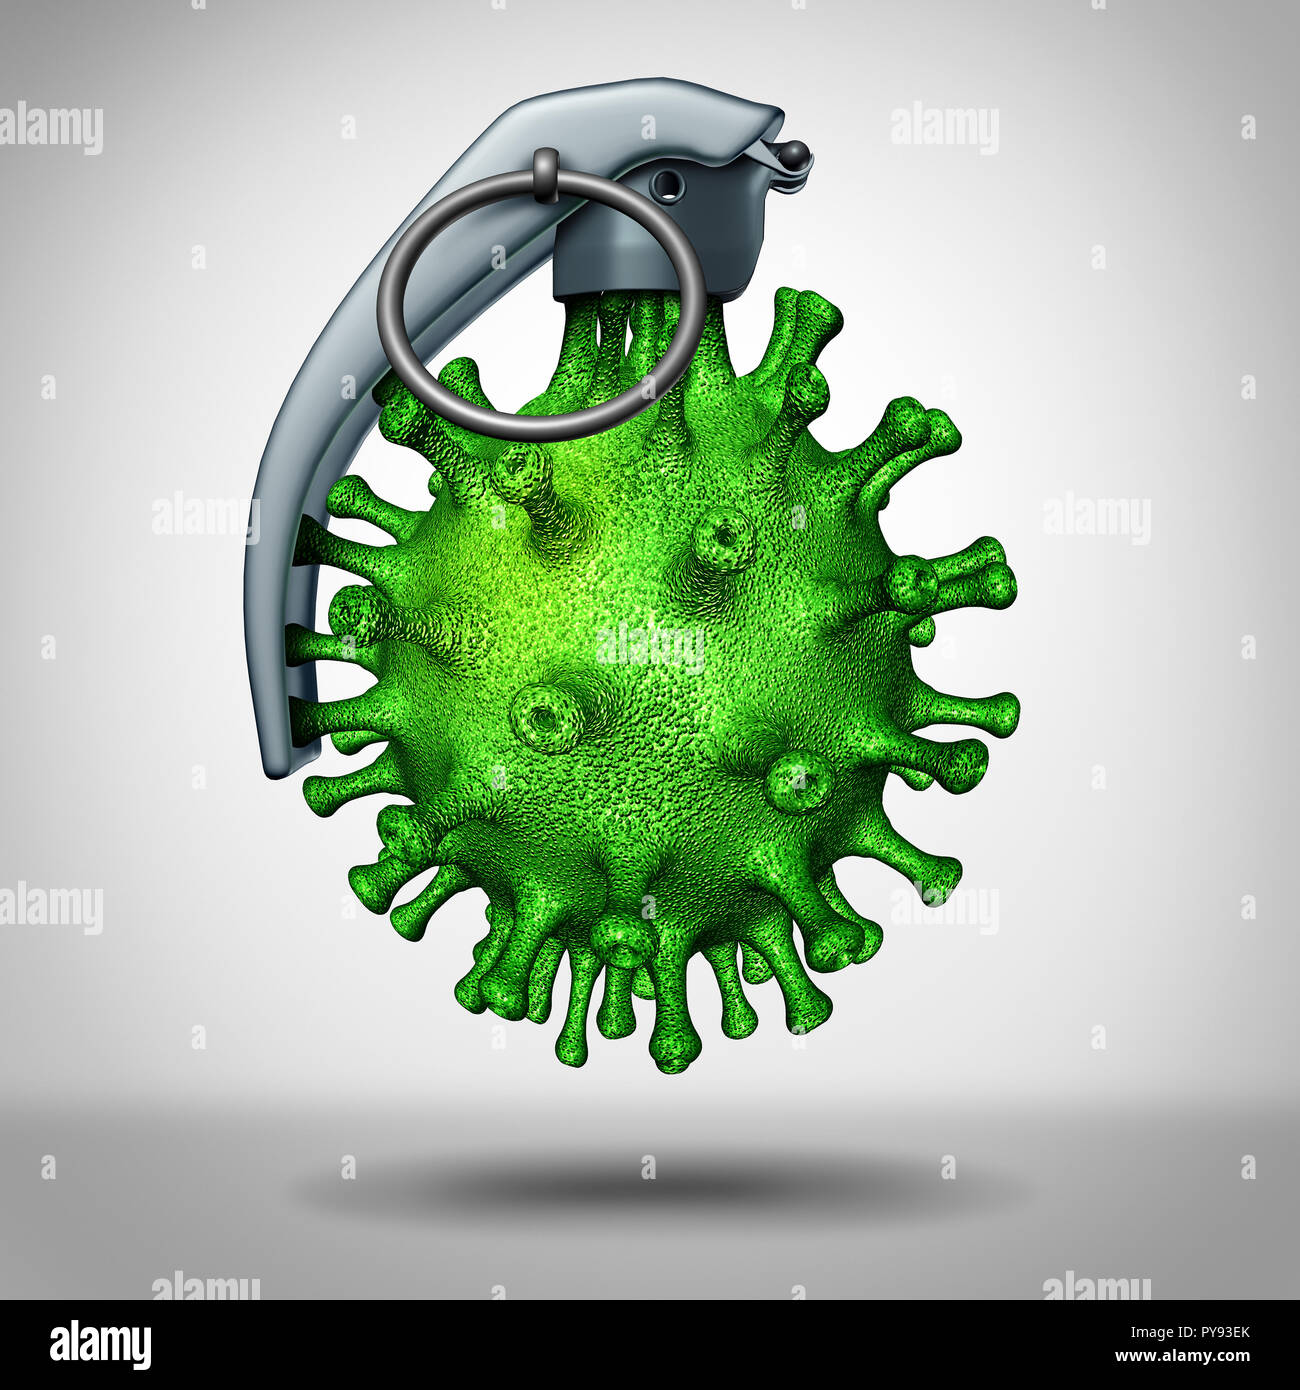 Bomba de virus amenaza médica como una enfermedad peligrosa shapred patógeno como una granada de mano como un icono para la guerra biológica y peligros. Foto de stock